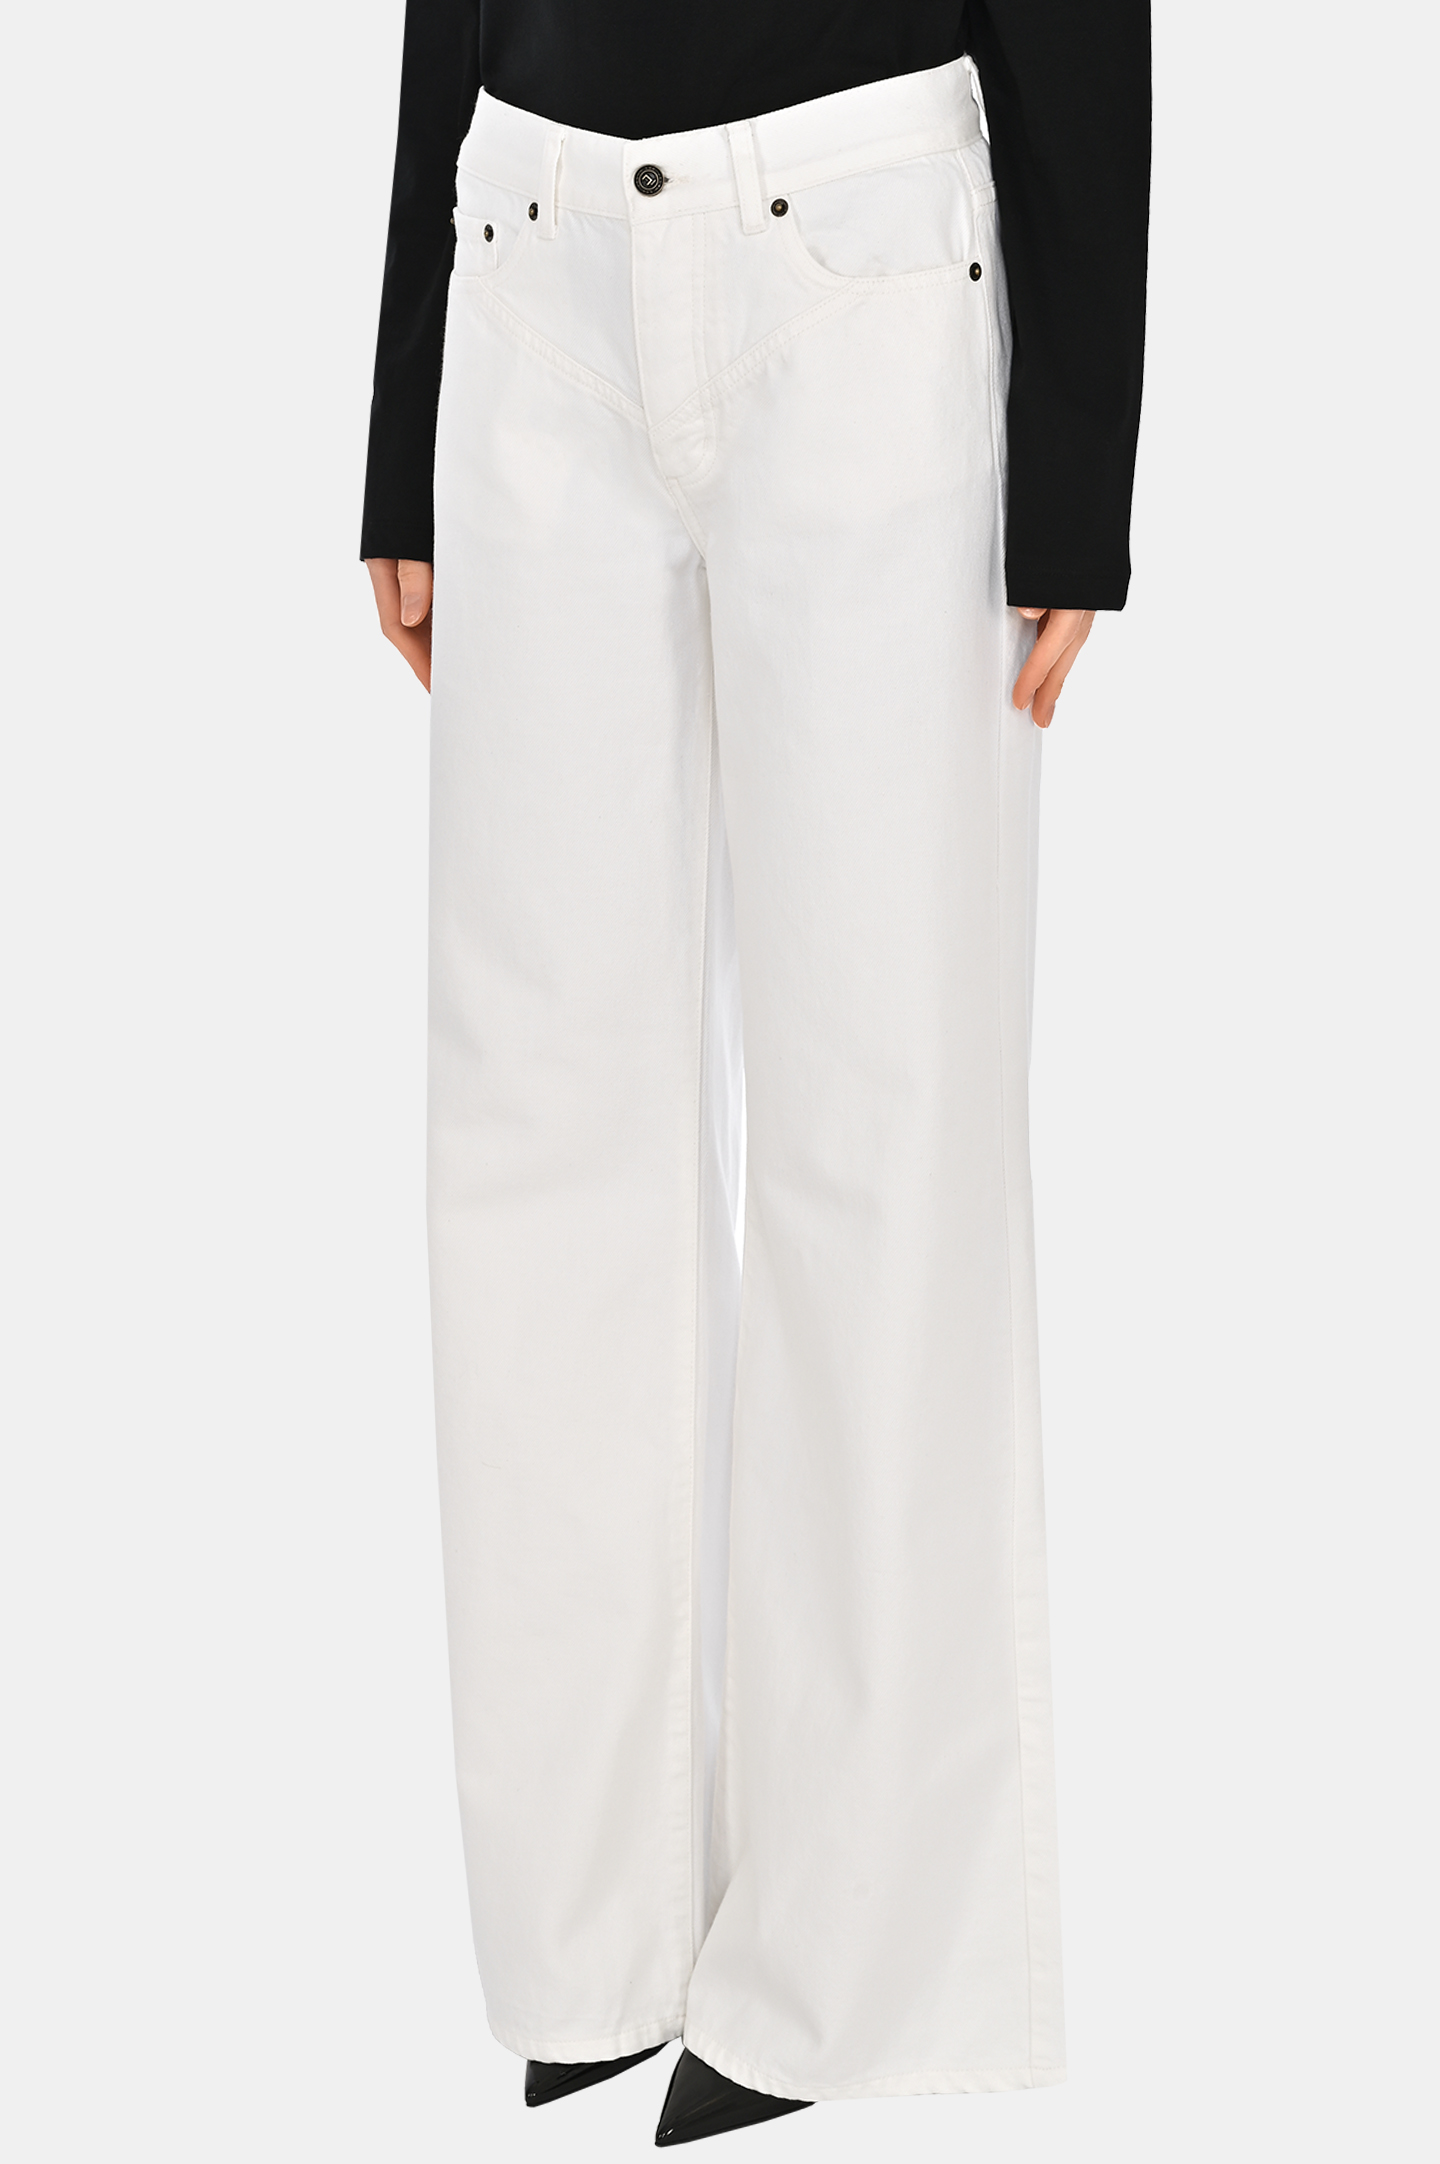 Широкие джинсы JACOB LEE WJP086SS, цвет: Белый, Женский